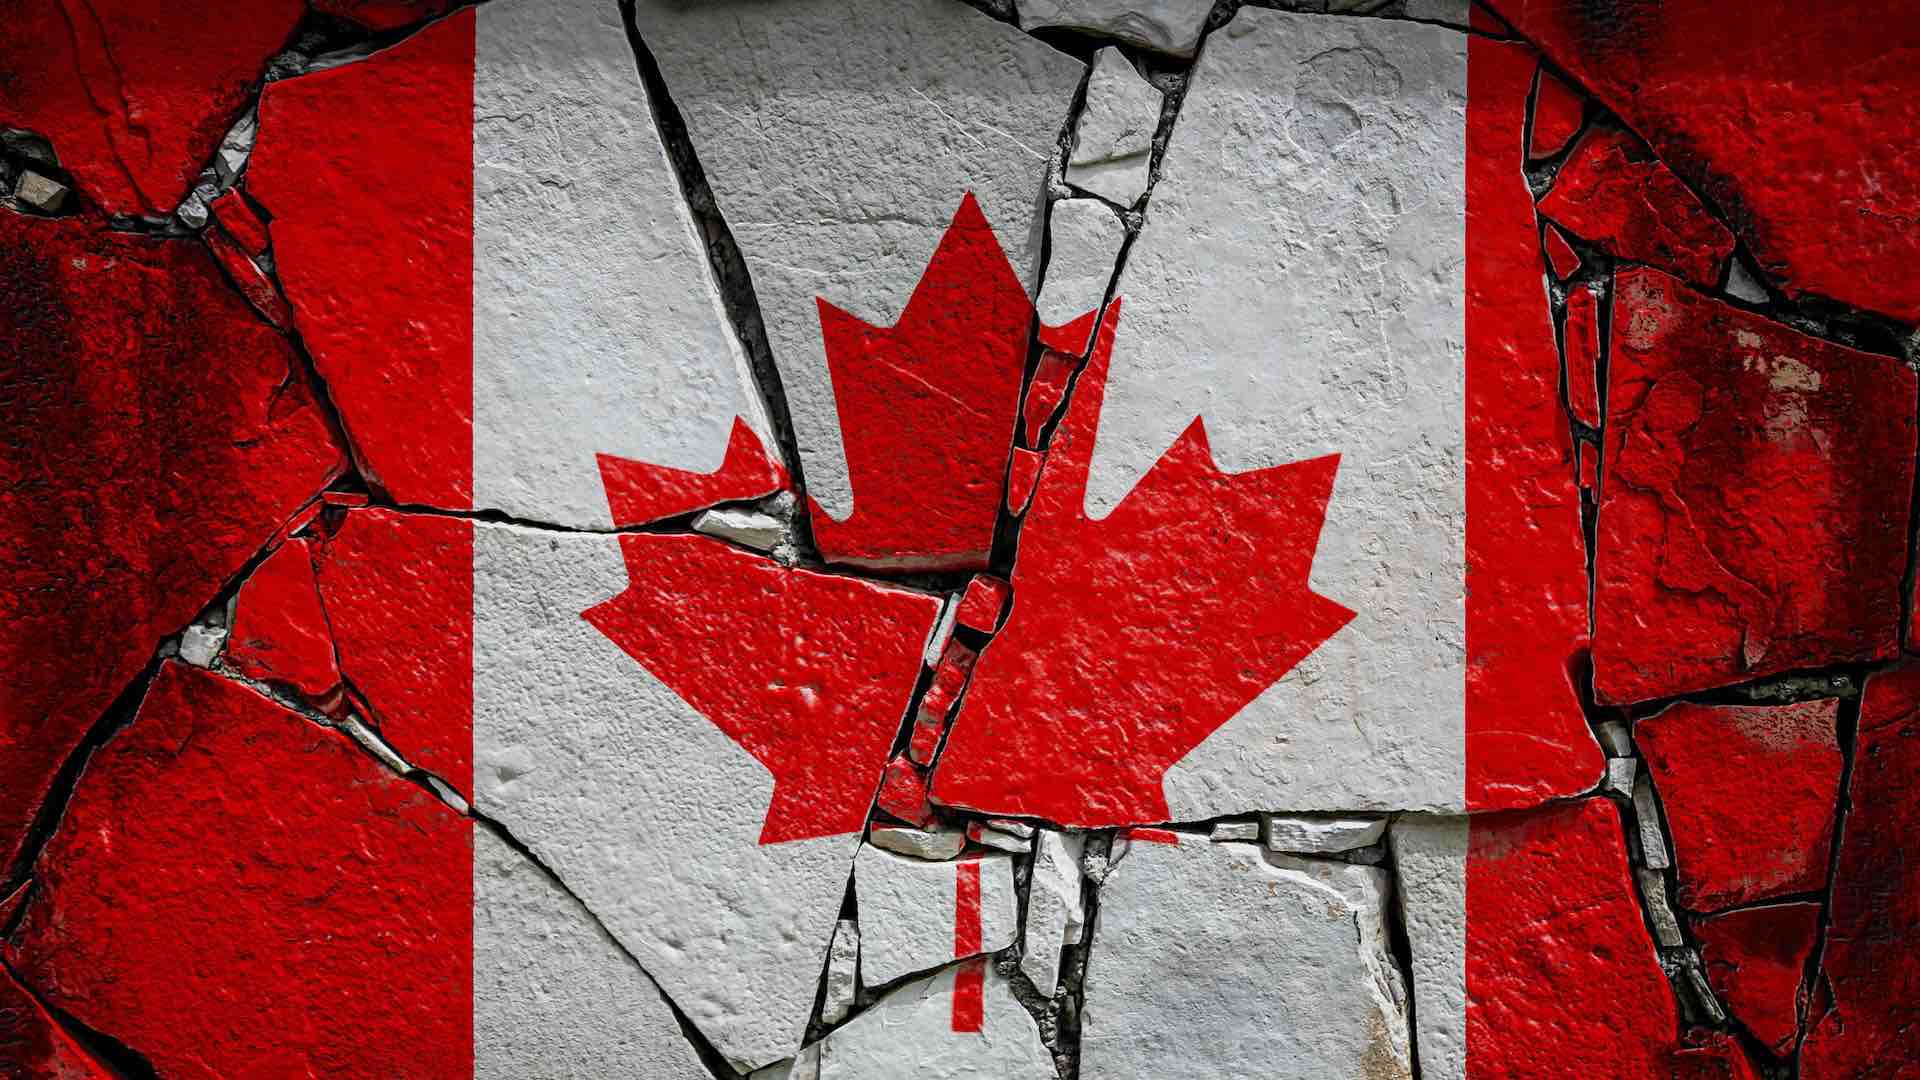 Hindistan'ın 41 Kanadalı diplomattan geri adım atmaya çalışmasıyla diplomatik çatlak büyüyor